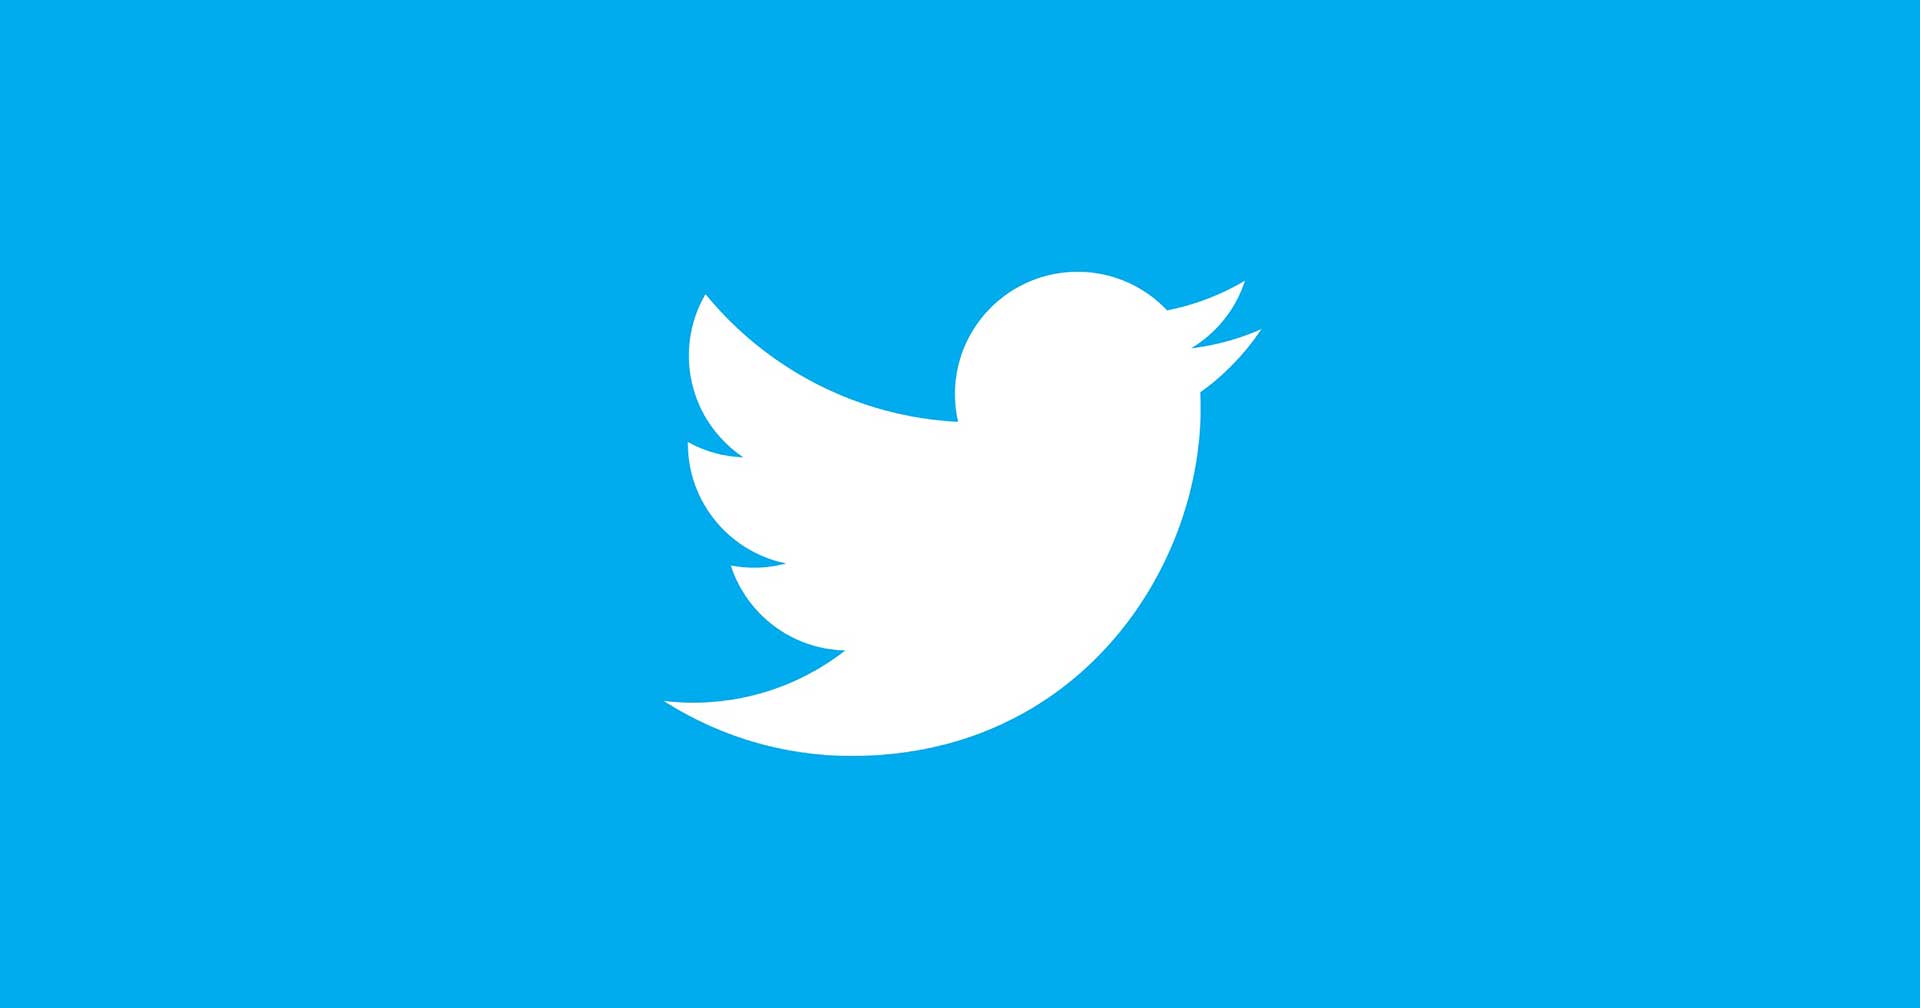 แฮกเกอร์ใช้ช่องโหว่บน Twitter แฮกข้อมูลของผู้ใช้มากกว่า 5 ล้านรายไปขาย